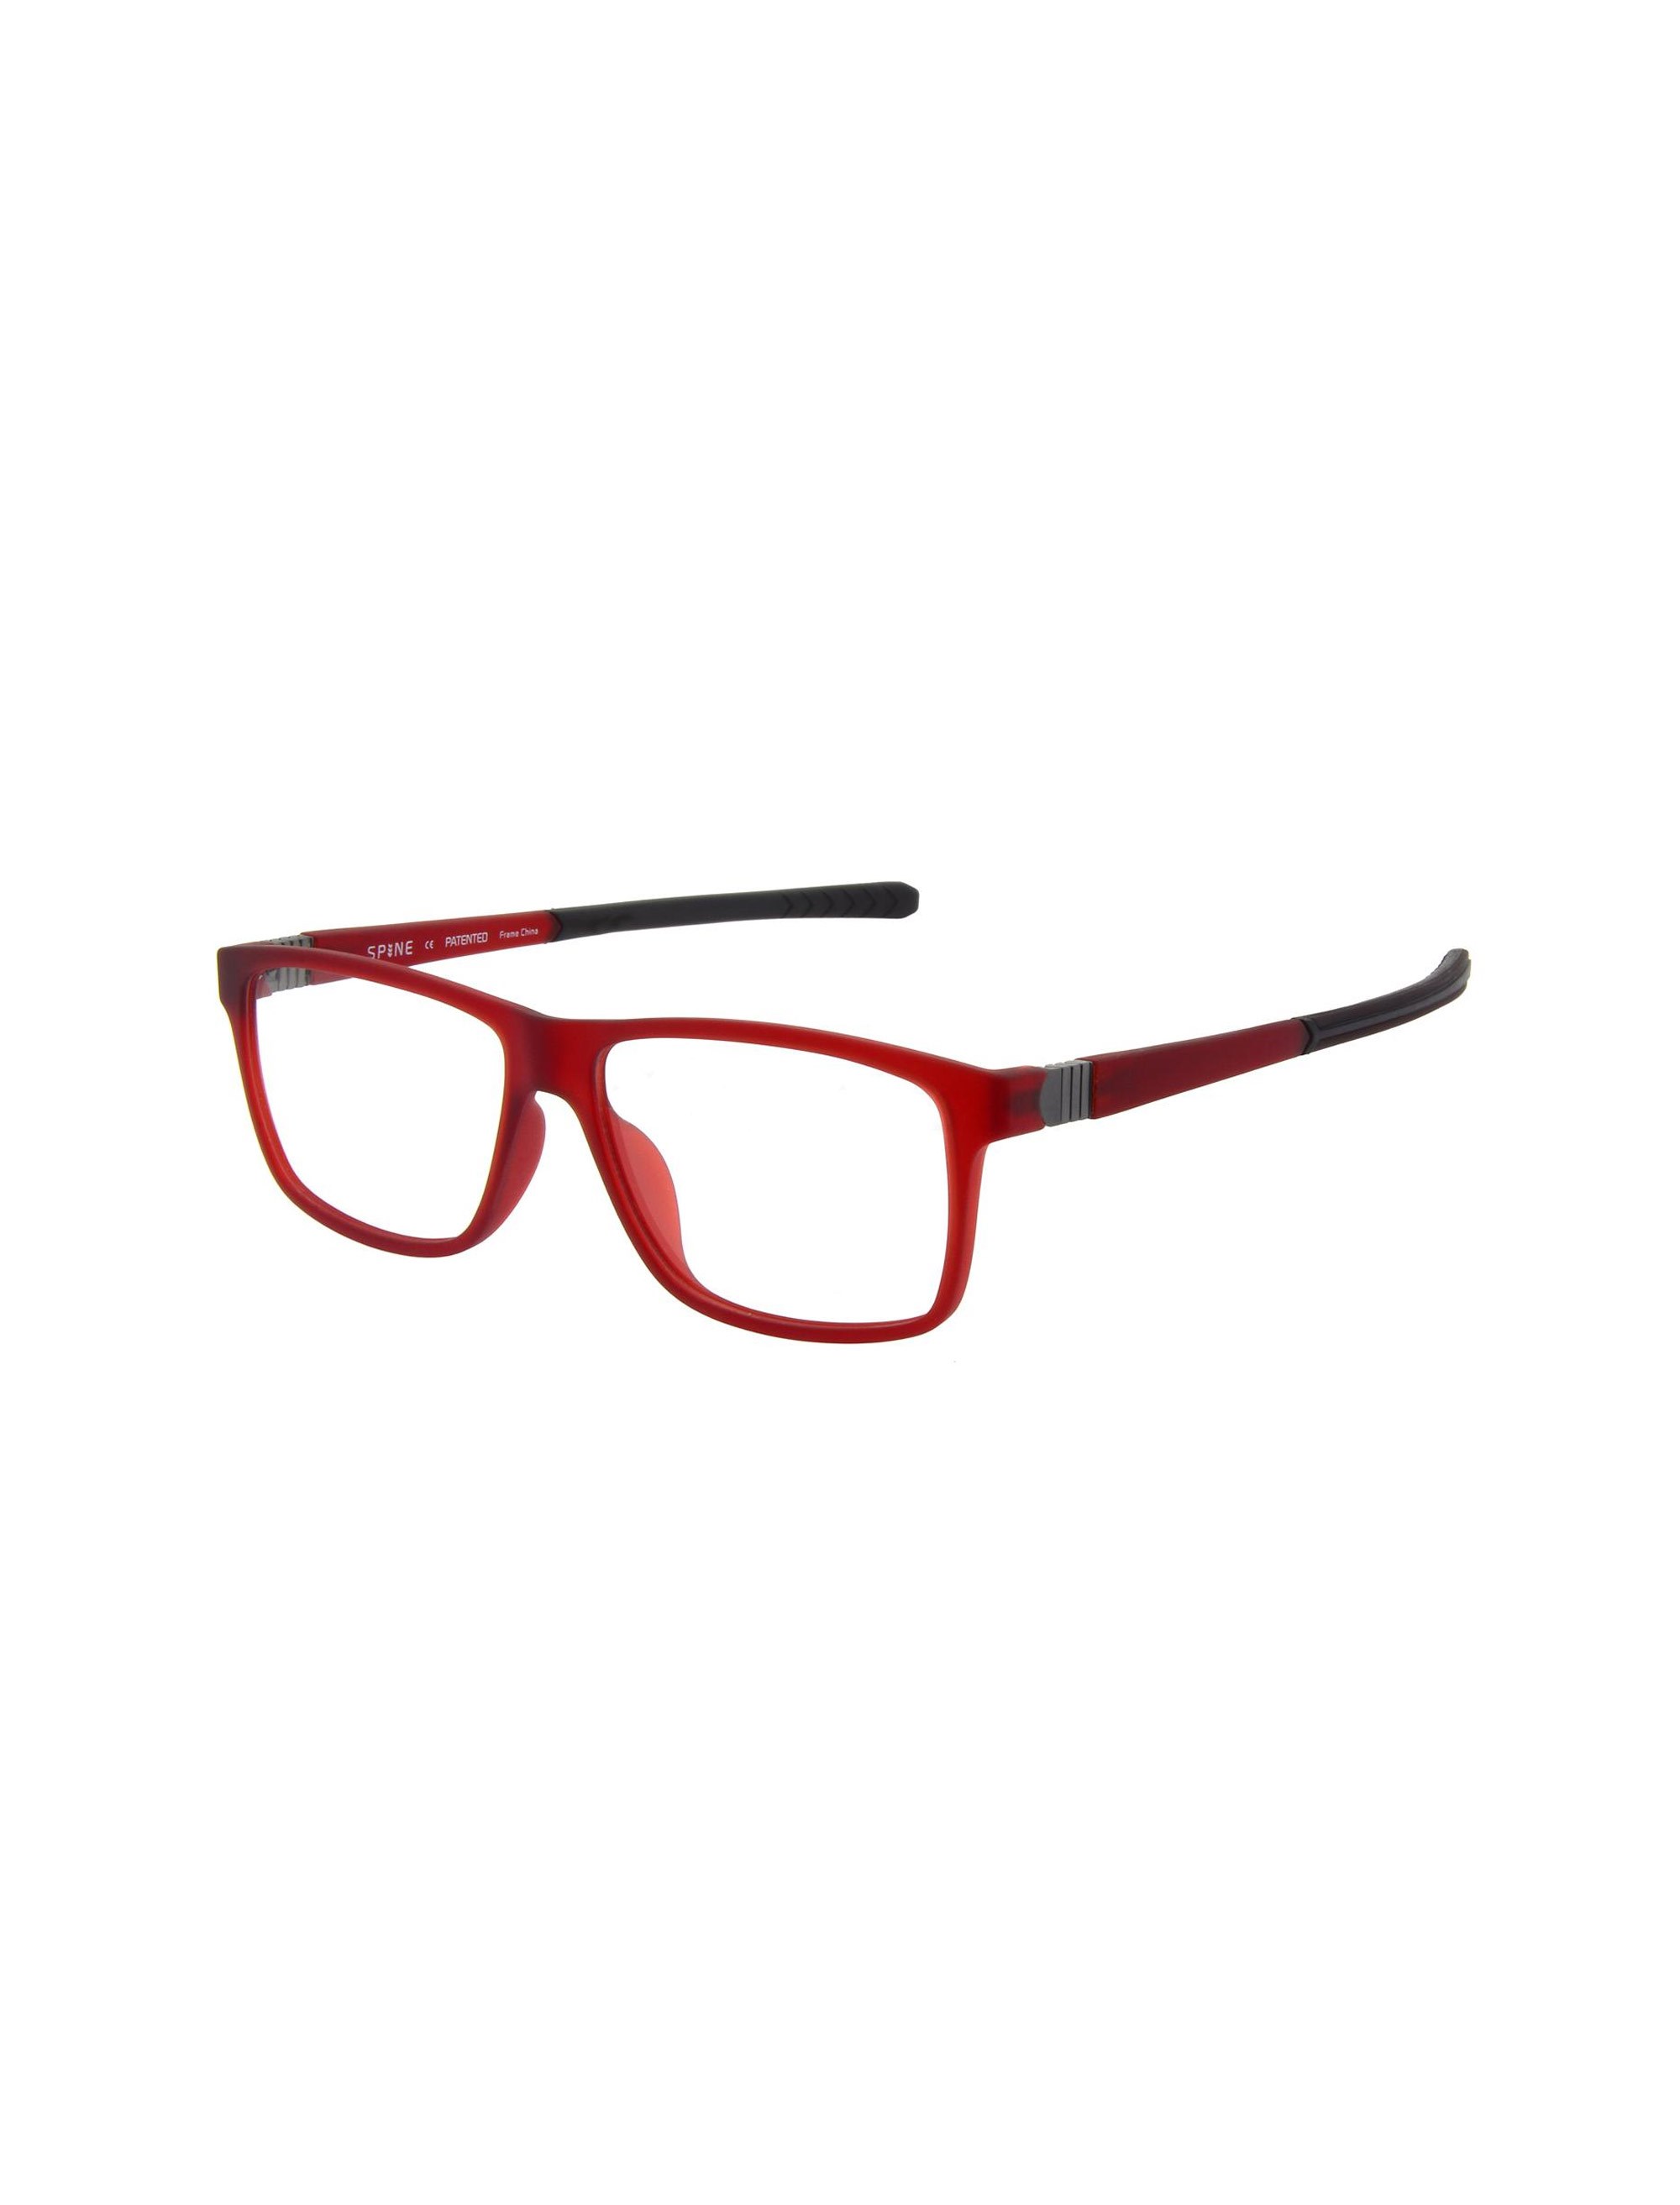 عینک طبی ویفرر مردانه - اسپاین - قرمز - 1